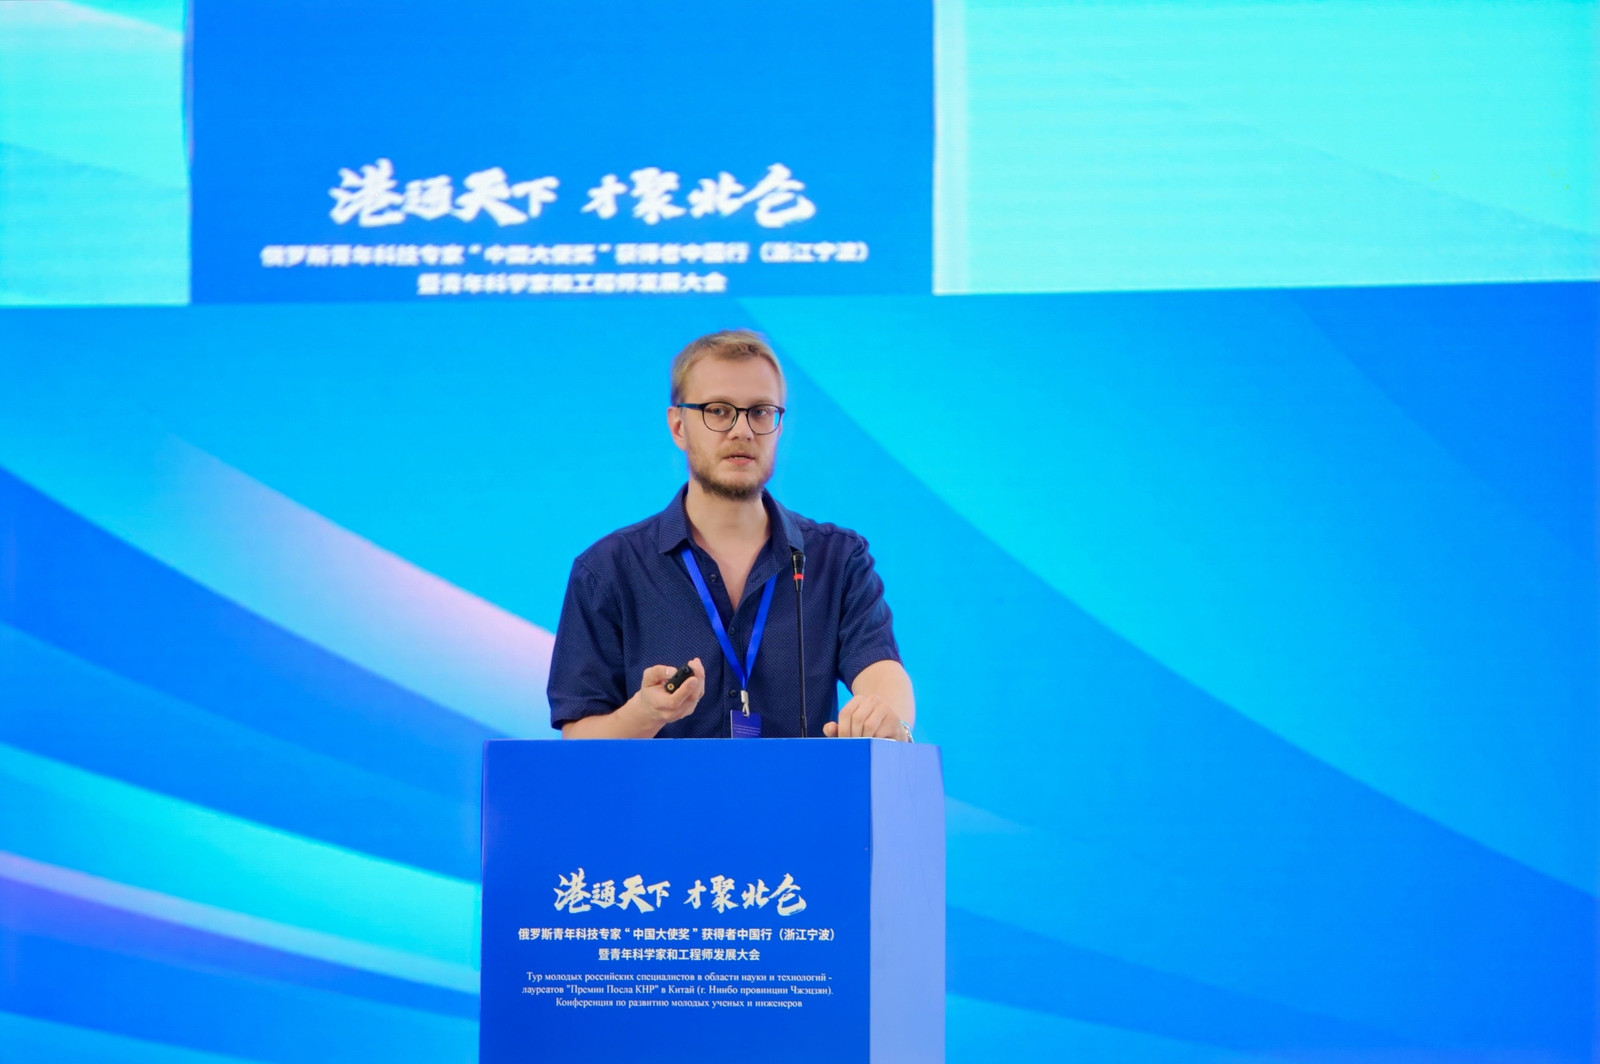 Молодой ученый УлГТУ Вадим Мошкин выступил с докладом на форуме в Китае по теме искусственного интеллекта